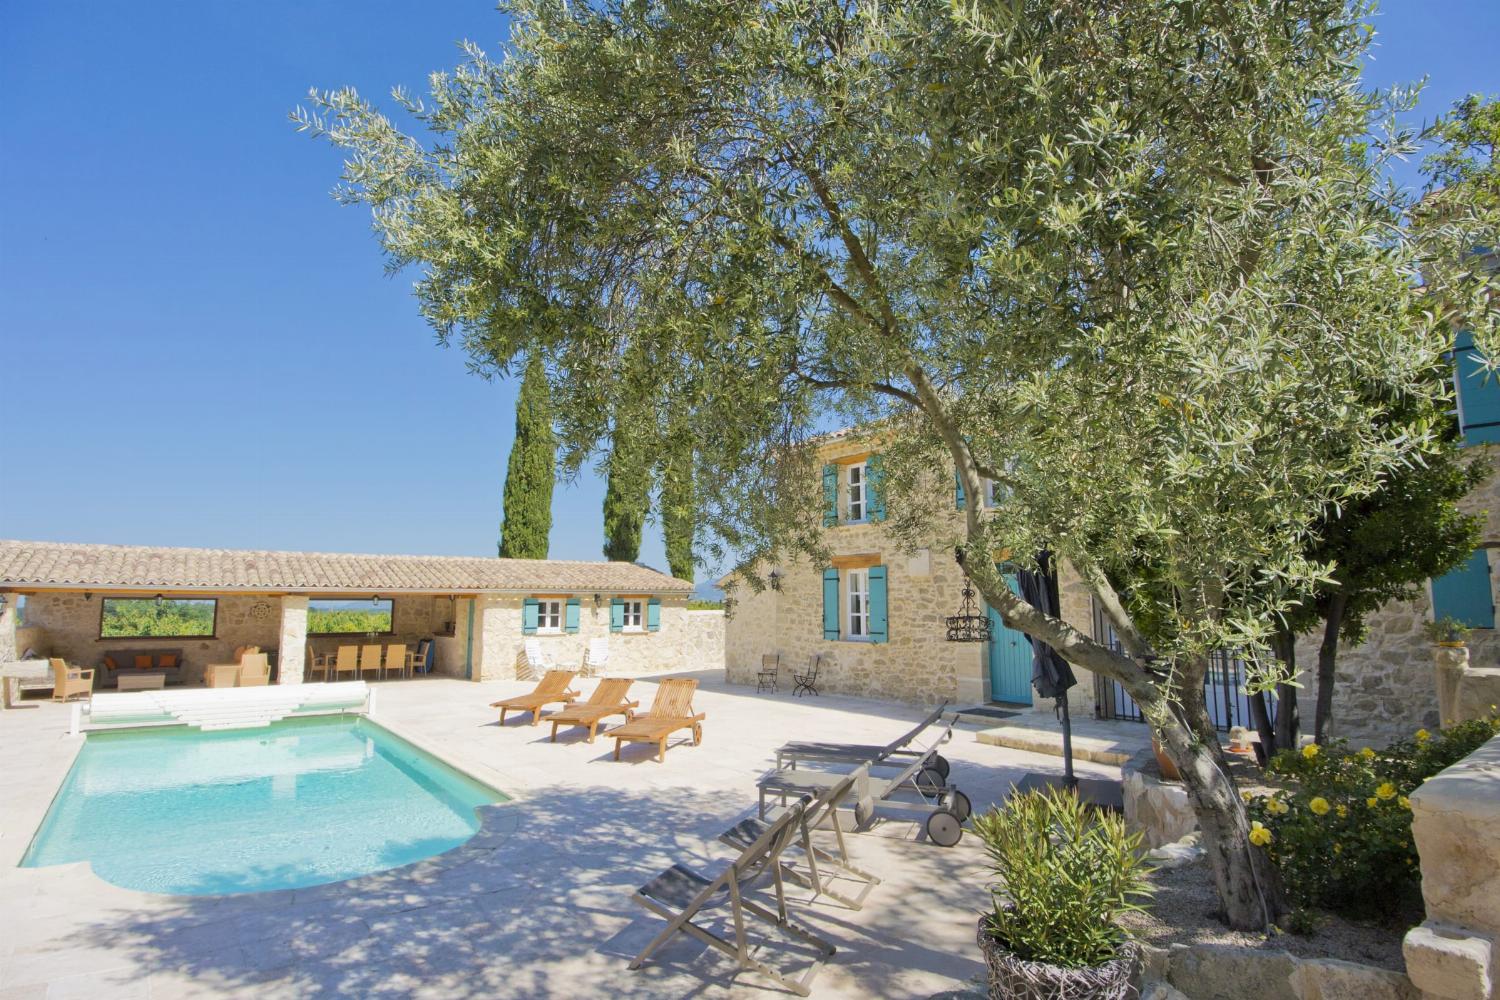 Location maison en Provence avec piscine privée